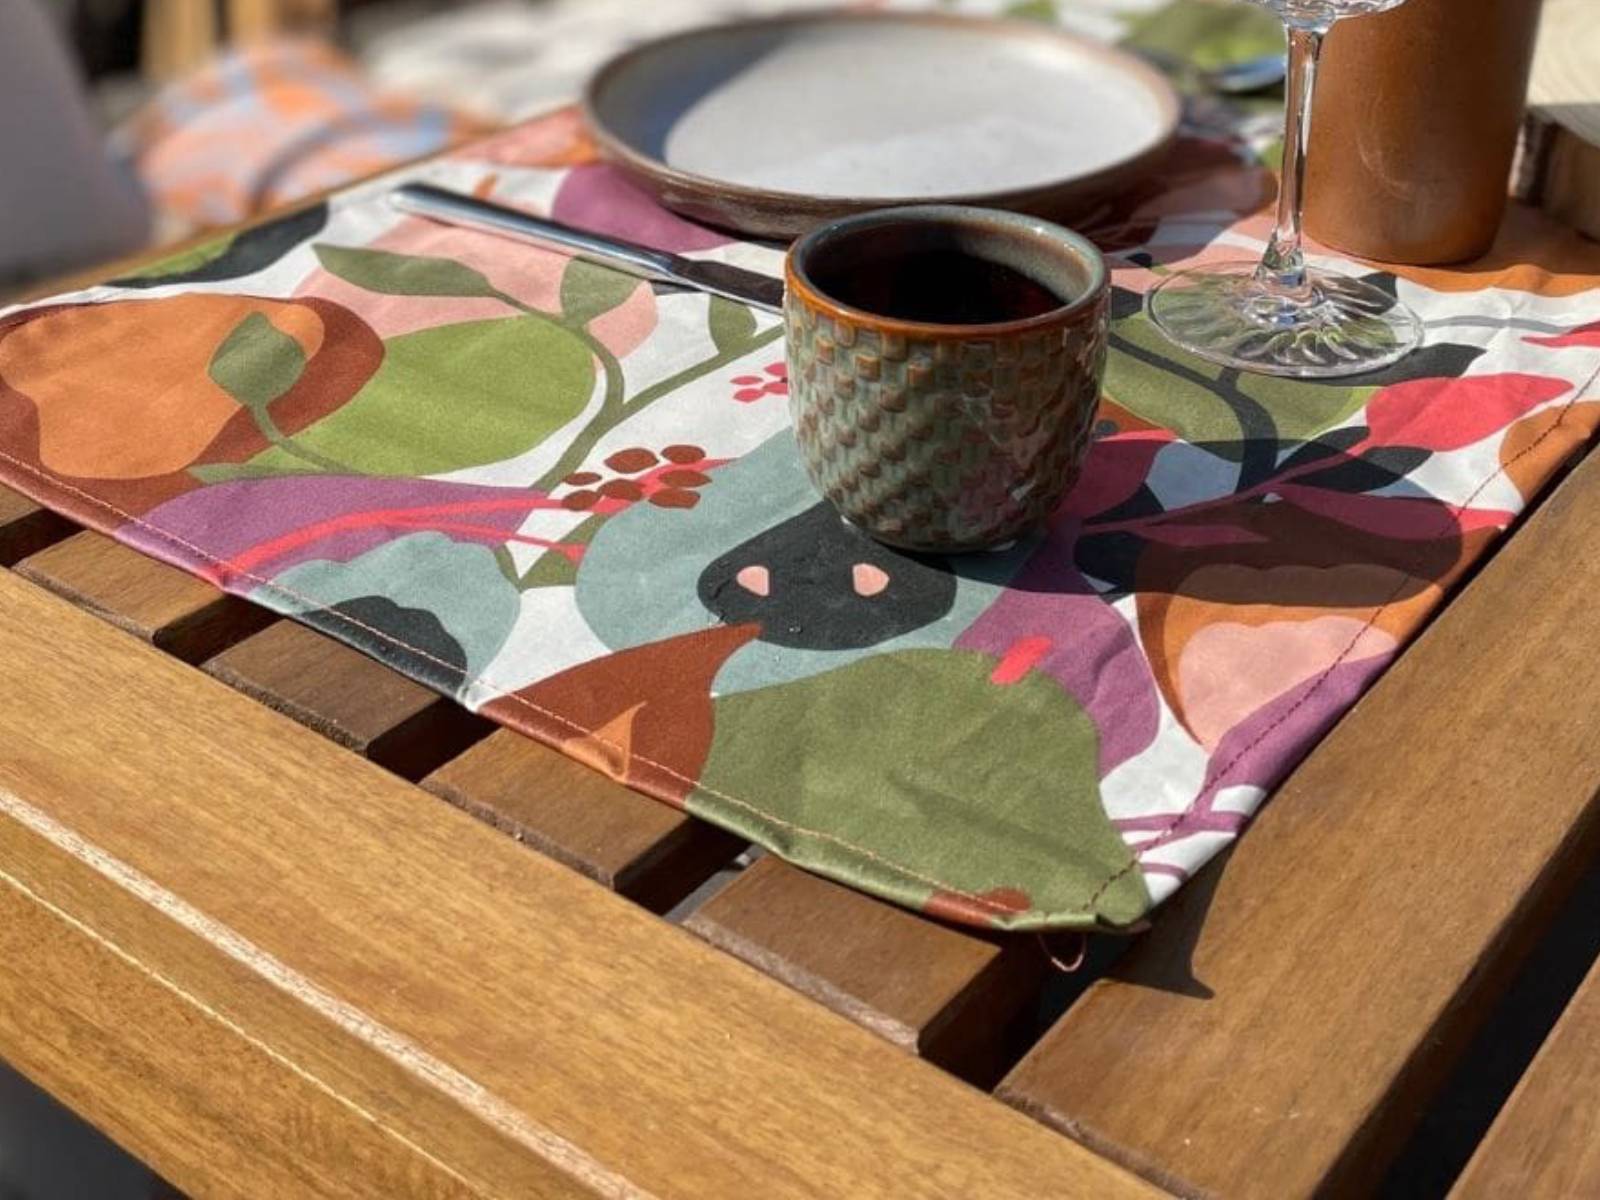 Comment utiliser les tissus nappes pour créer une table accueillante ?